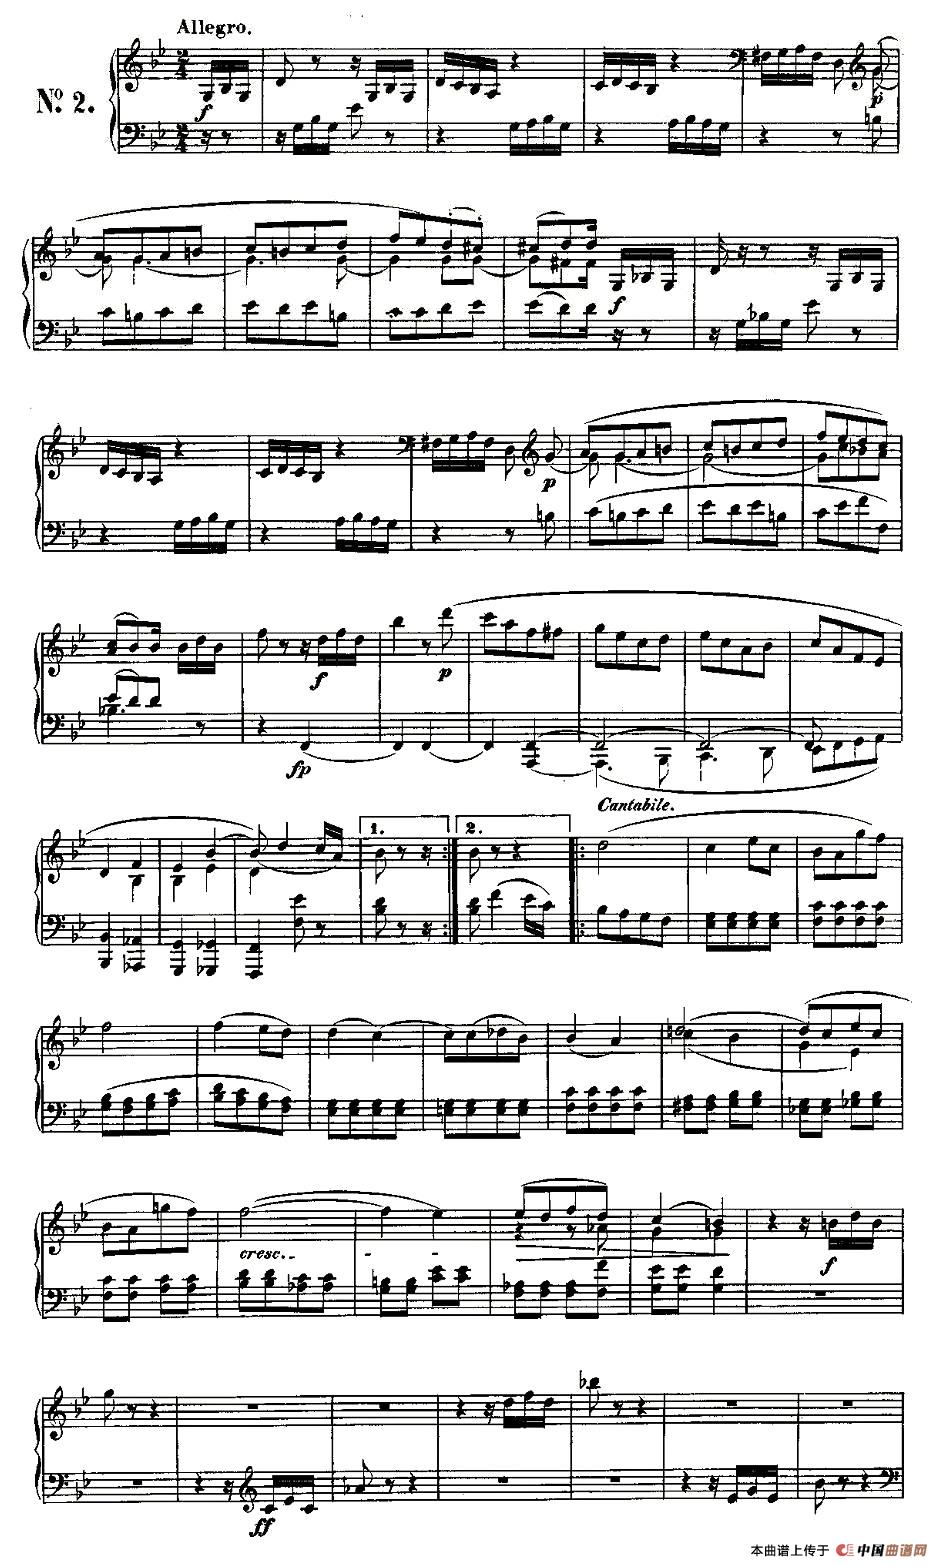 《贝多芬钢琴小品Op.126 之二》钢琴曲谱图分享